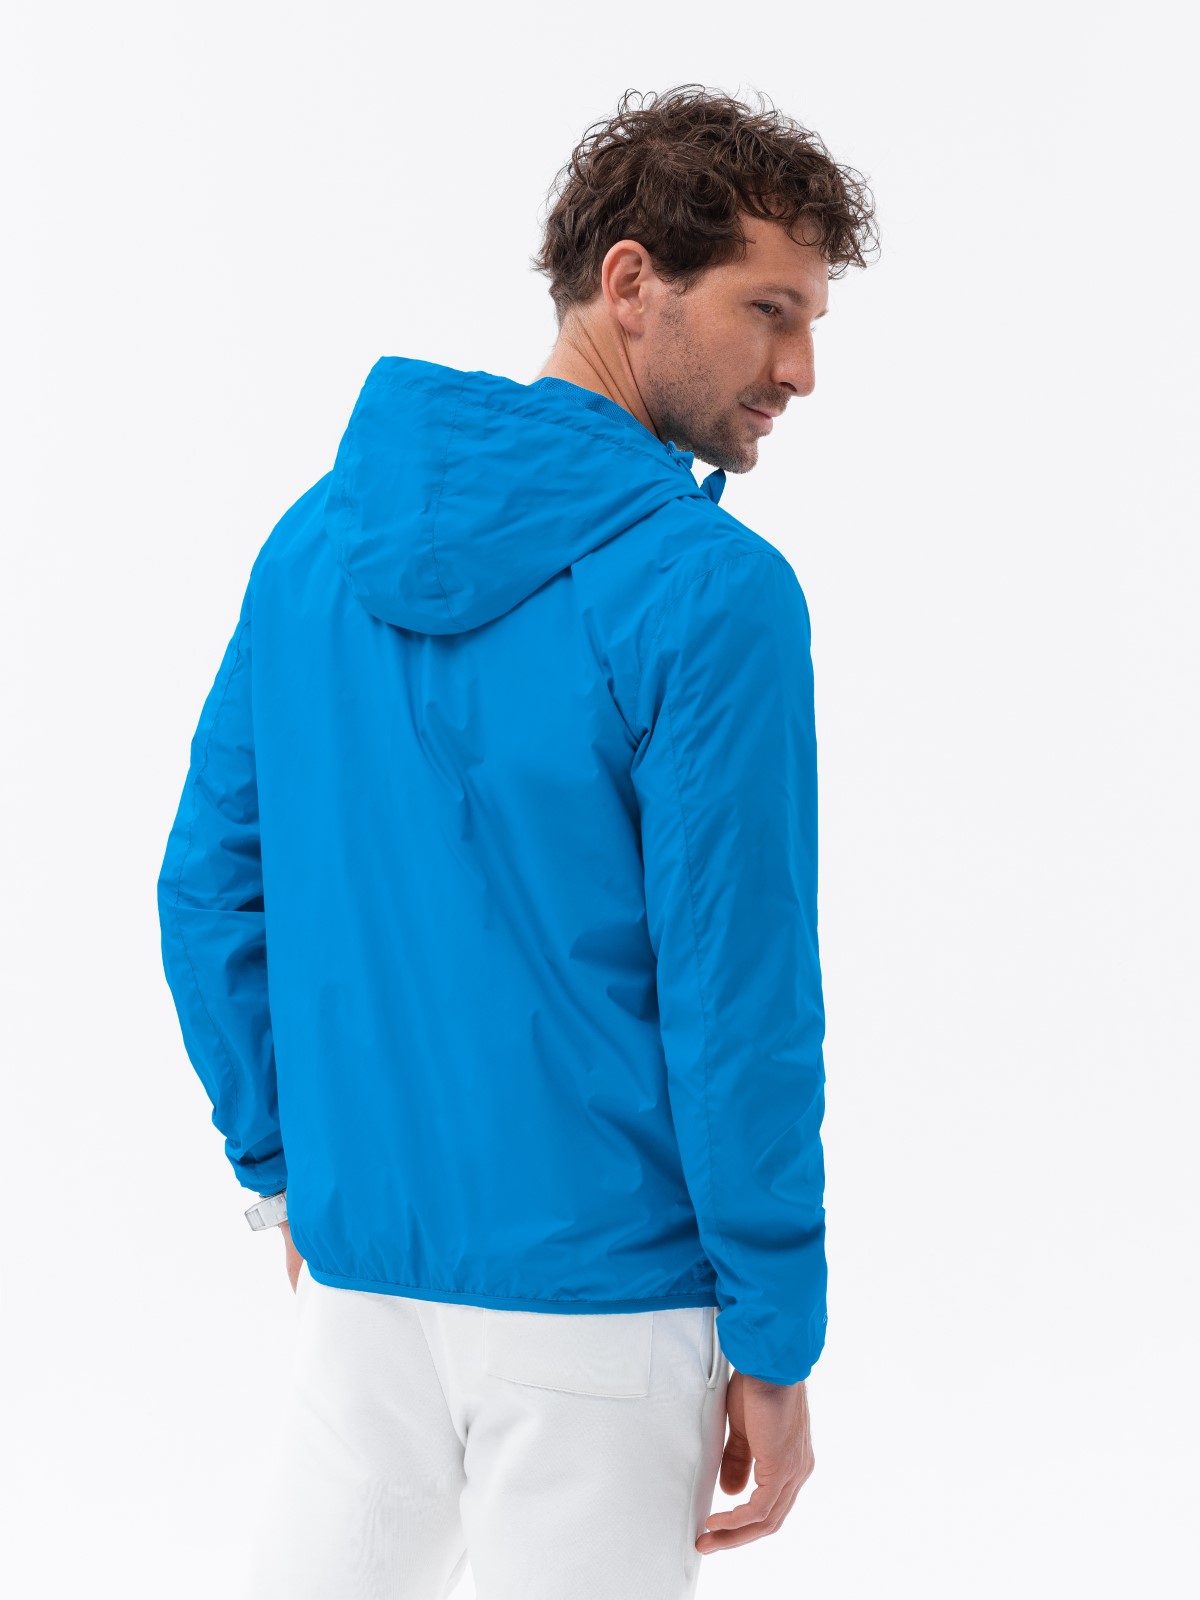 Men's windbreaker jacket with hood and contrasting details - blue V1 OM ...